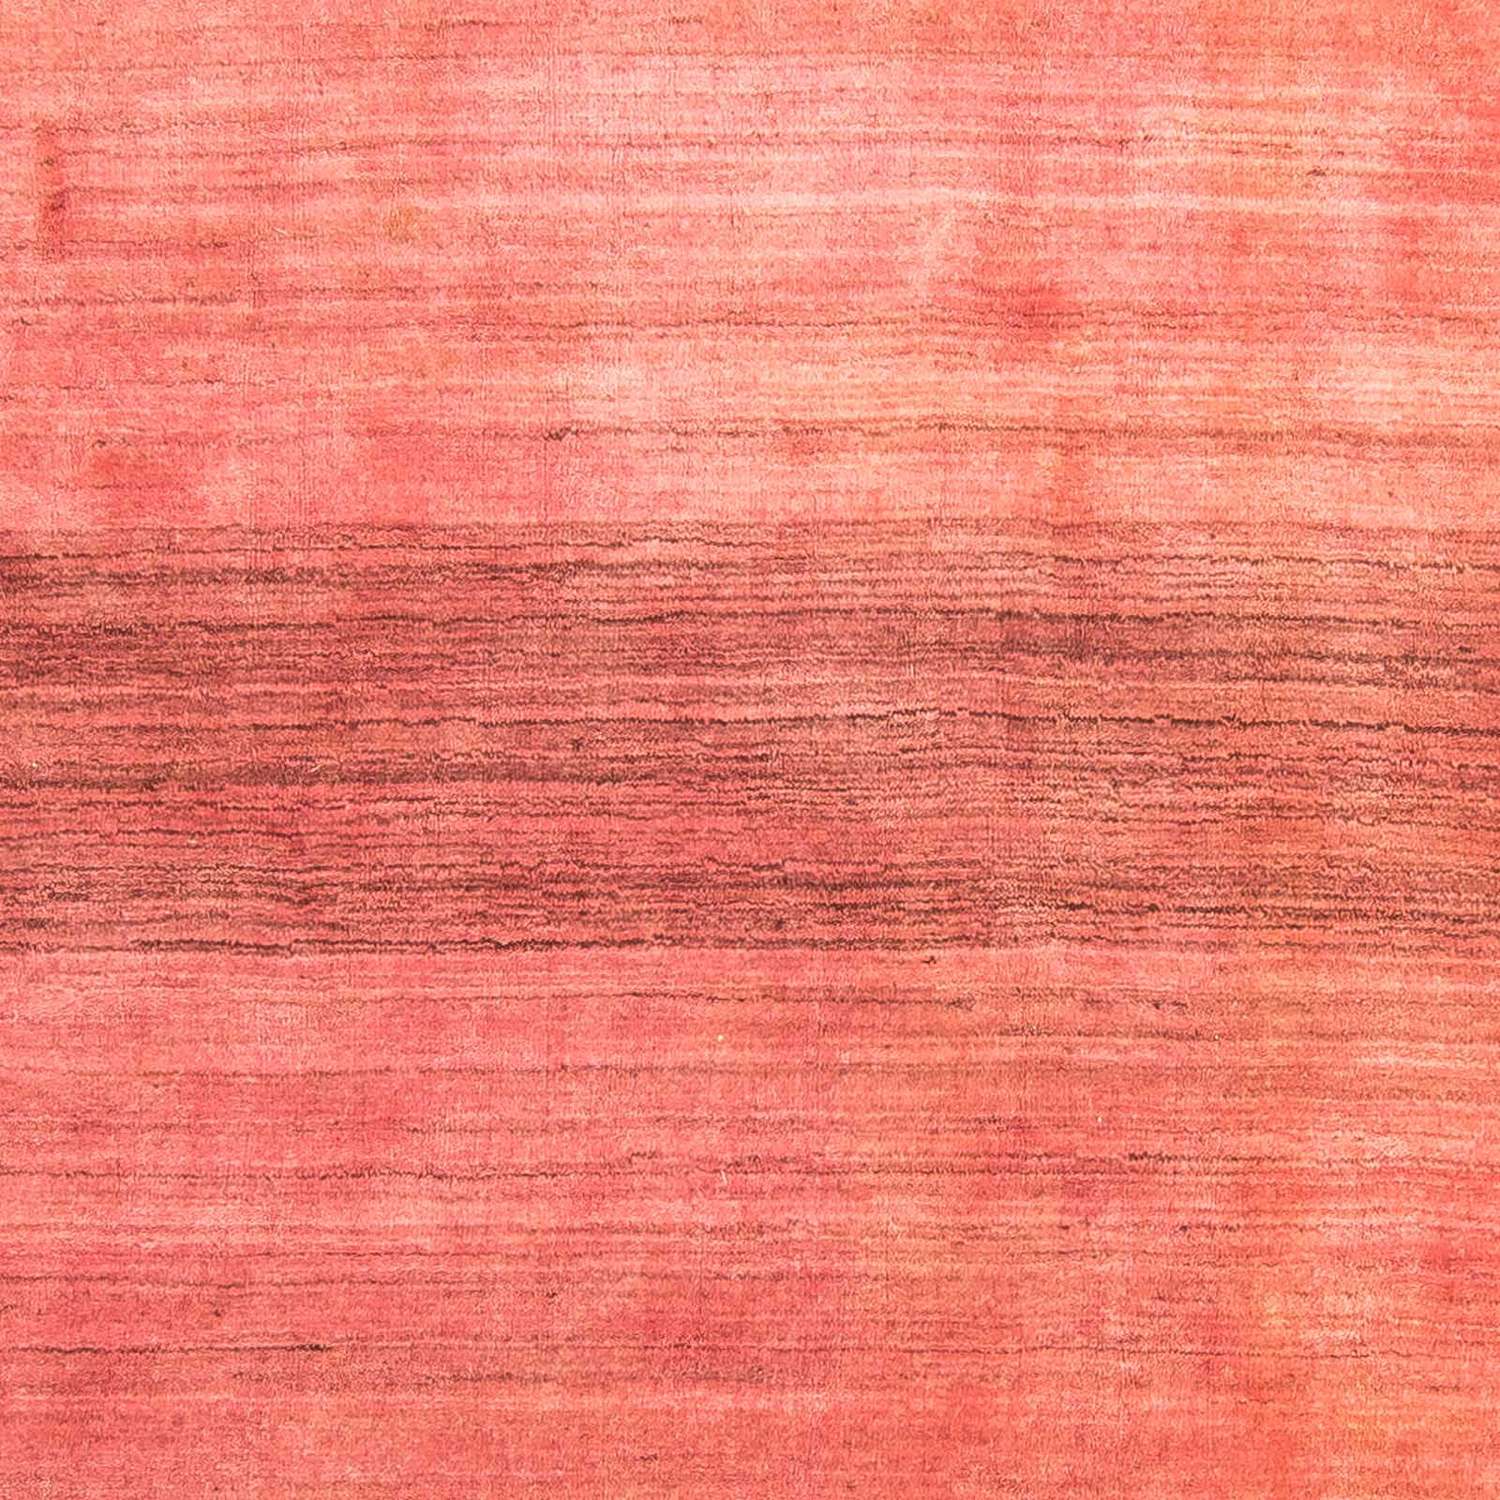 Gabbeh teppe - Indus - 243 x 174 cm - flerfarget